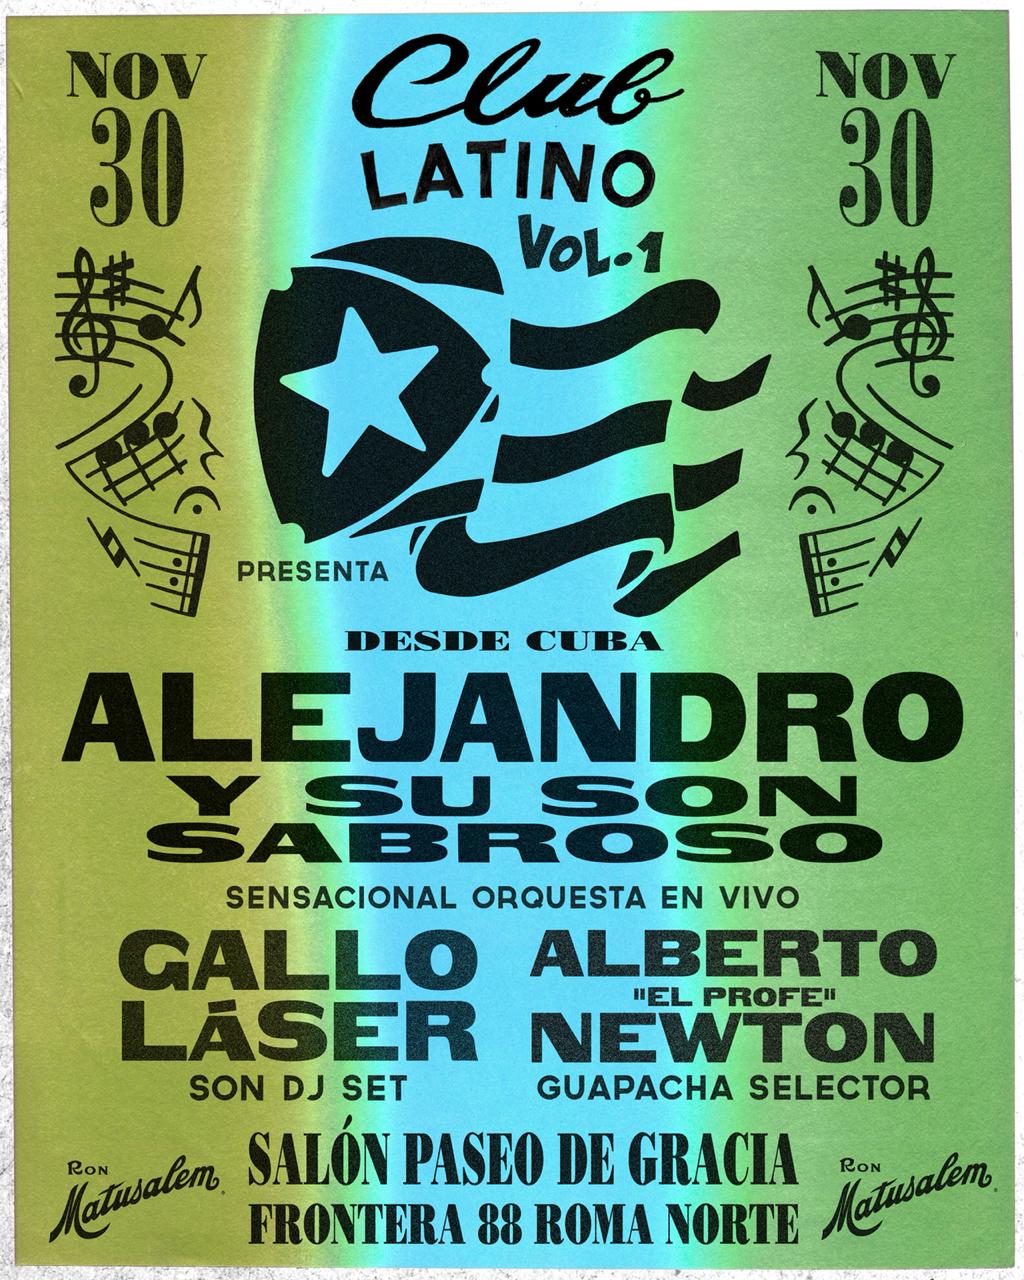 Club Latino Vol.1